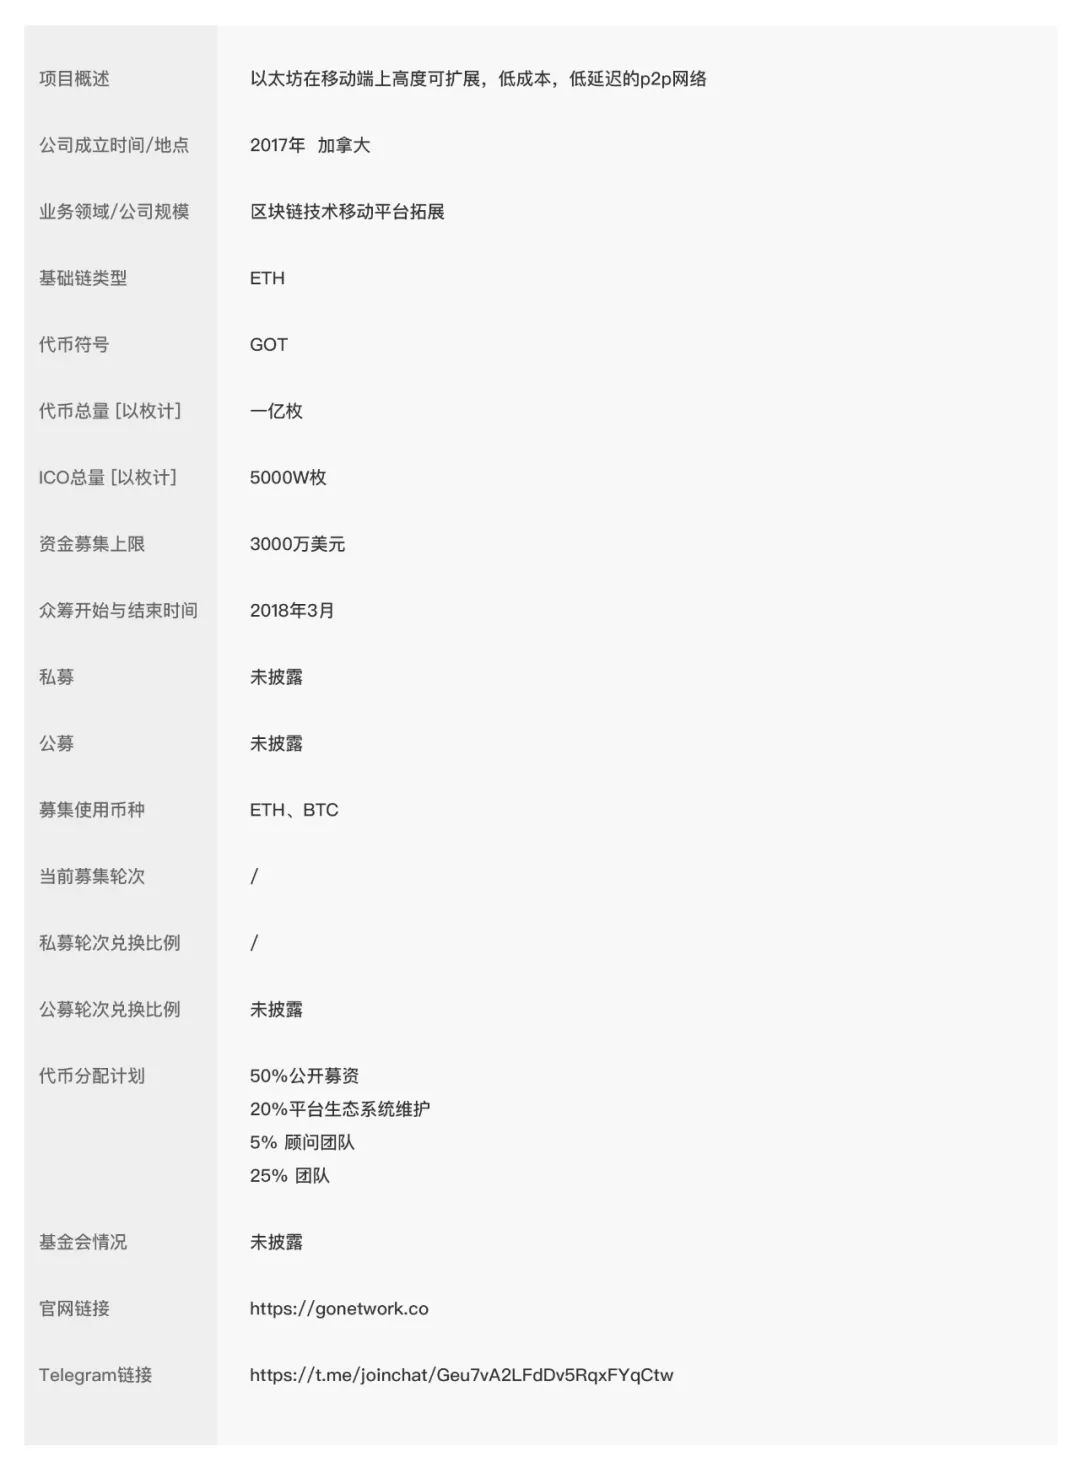 siteshilian.com 以太坊中文官网_以太坊中模拟多个节点_搭建以太坊节点